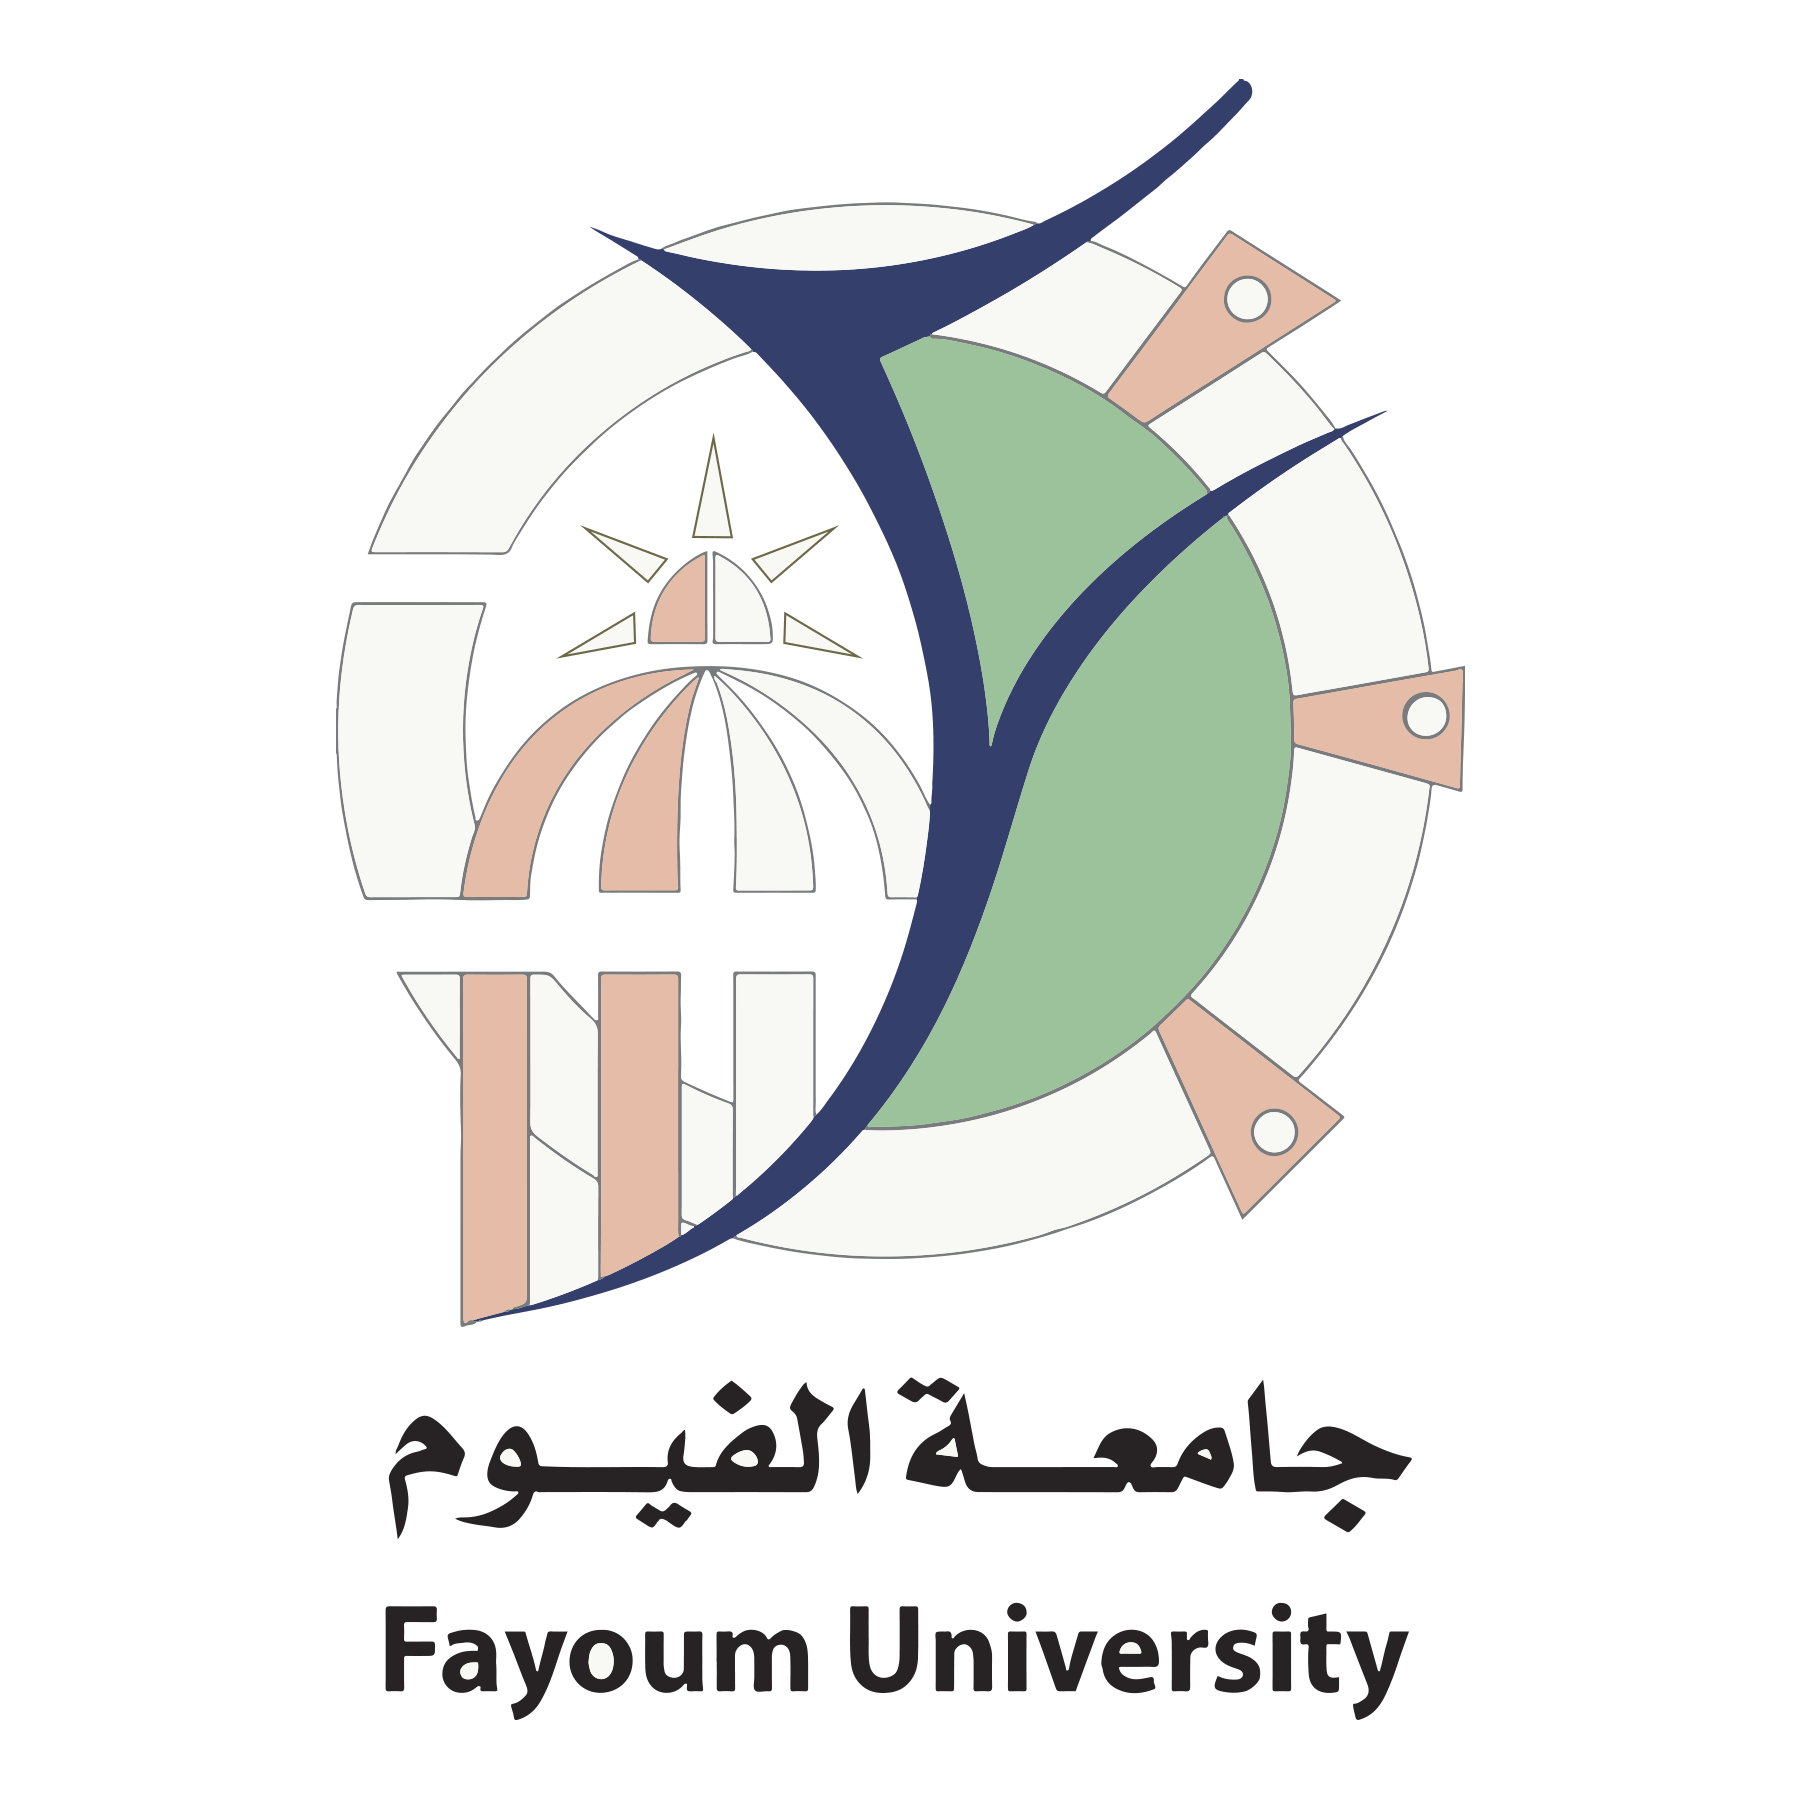 Fayoum University logo